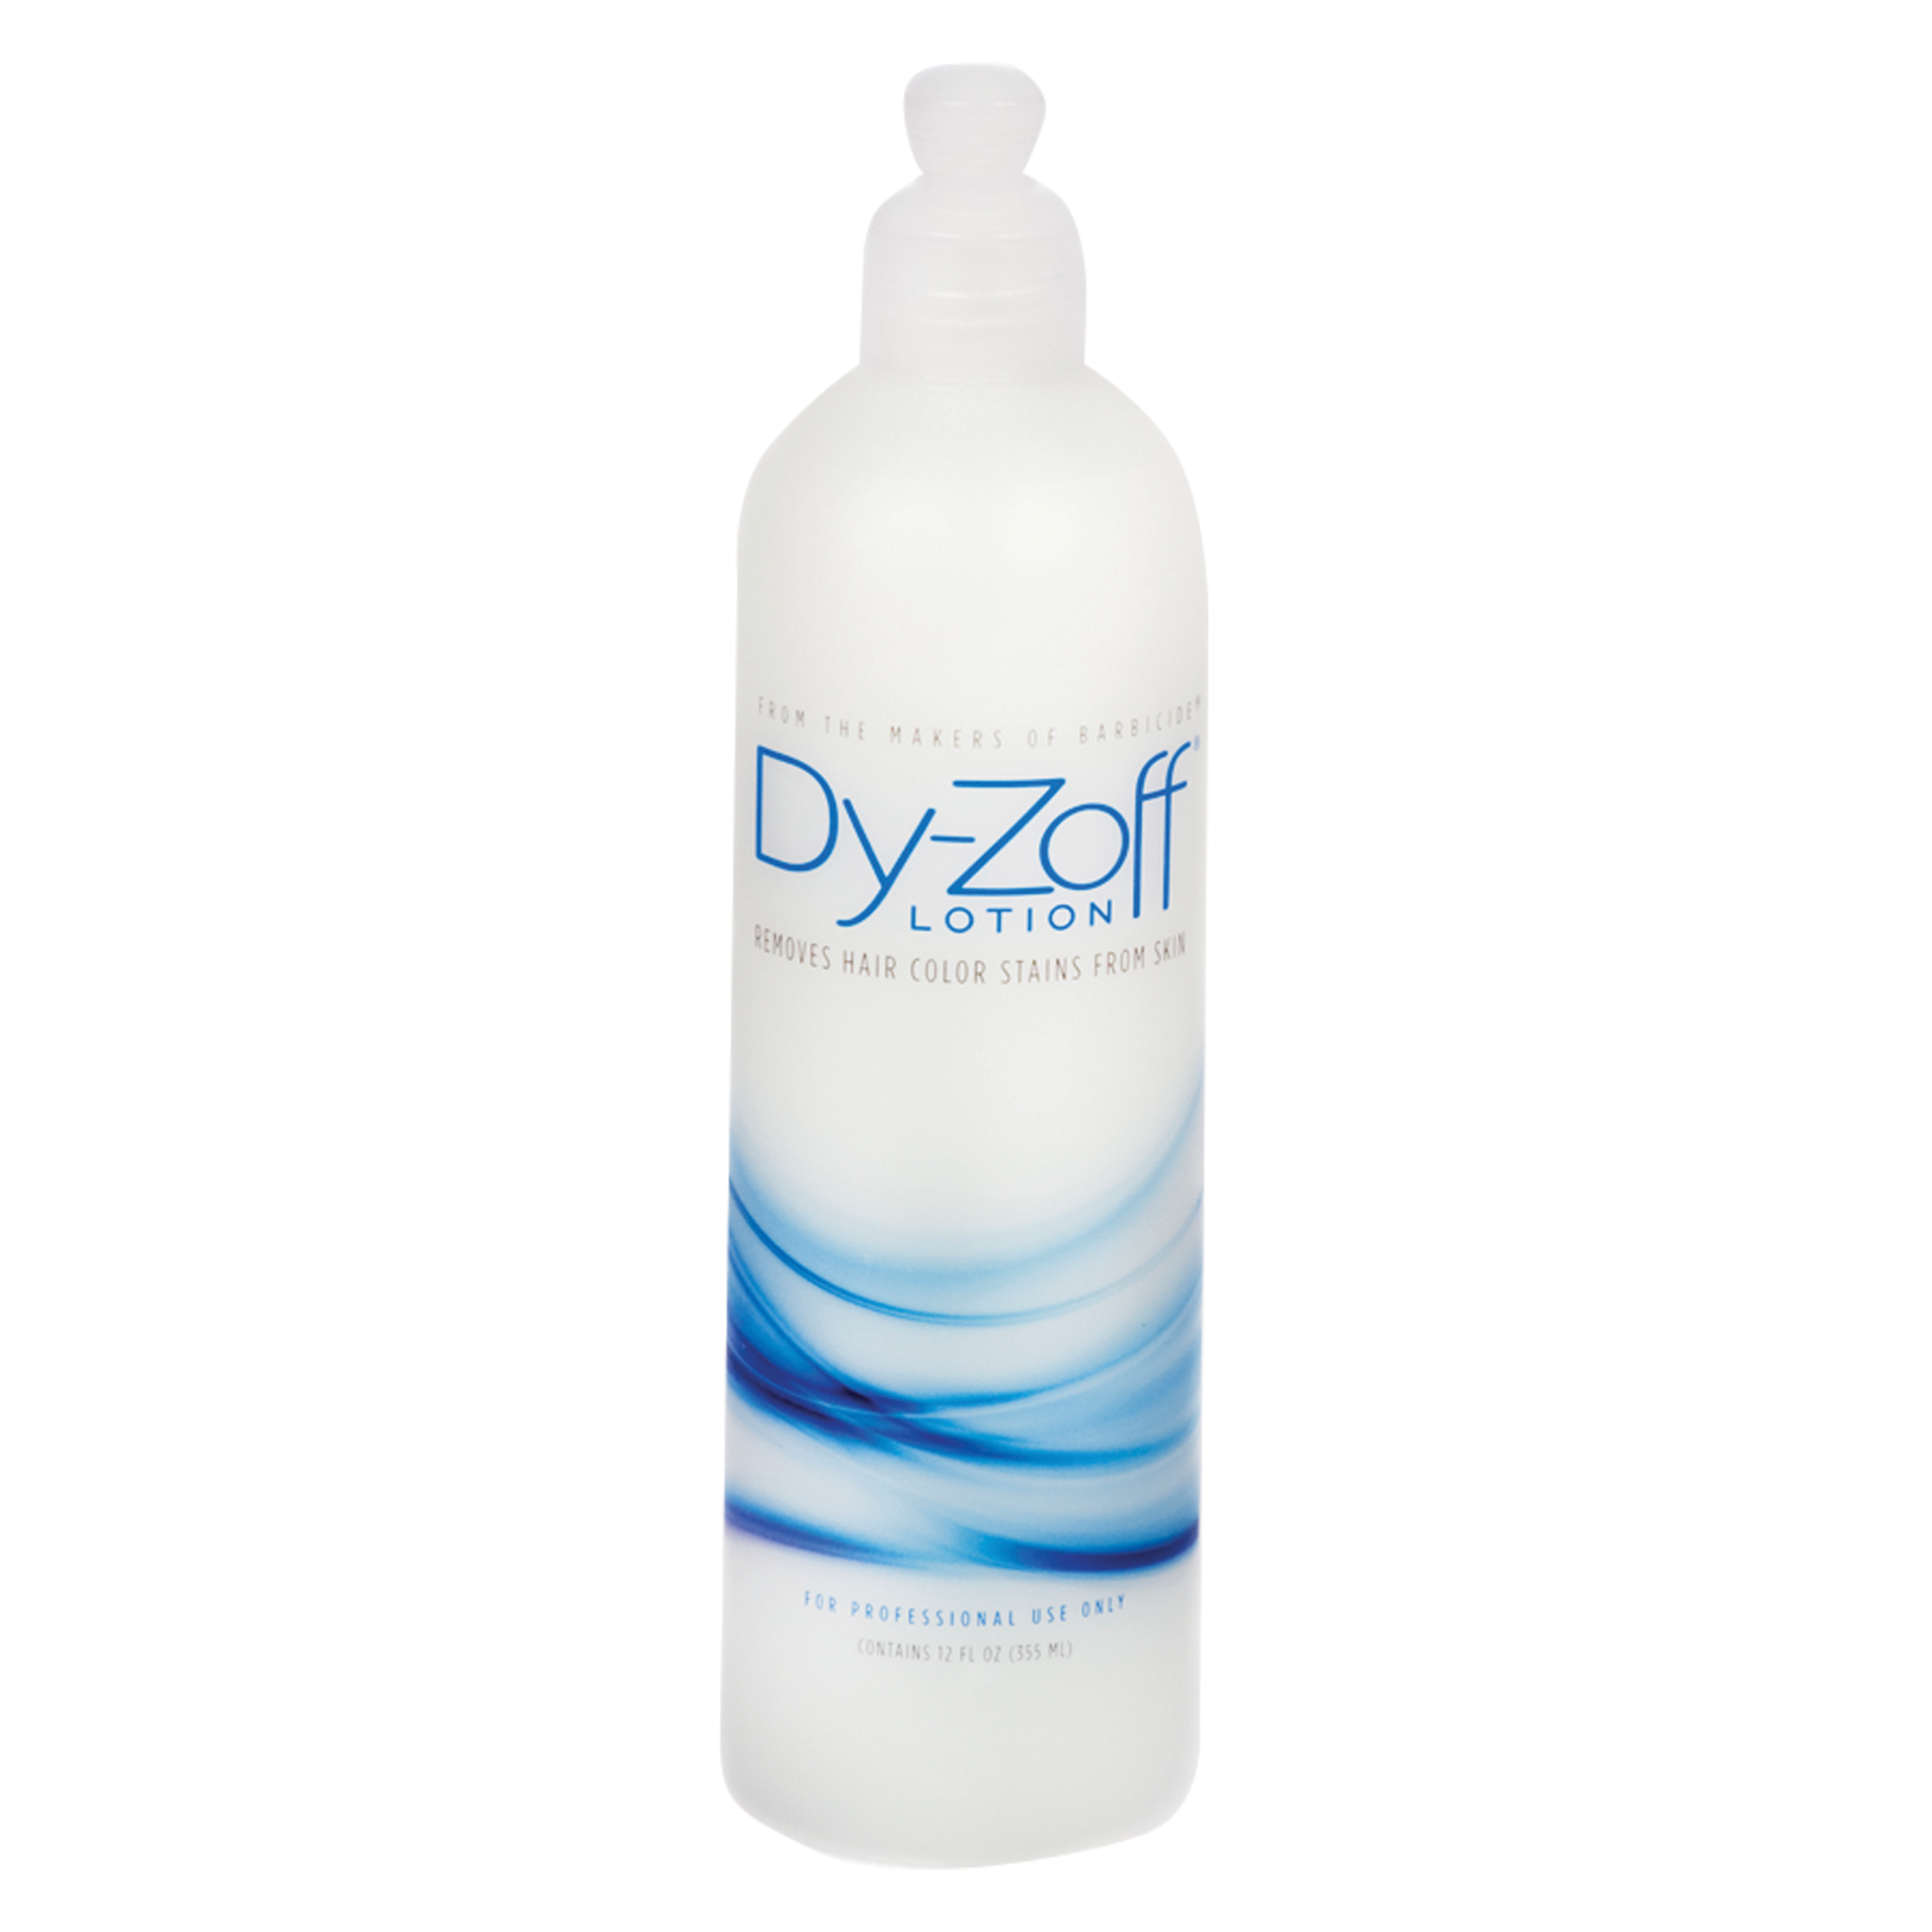 Dy-Zoff® Lotion